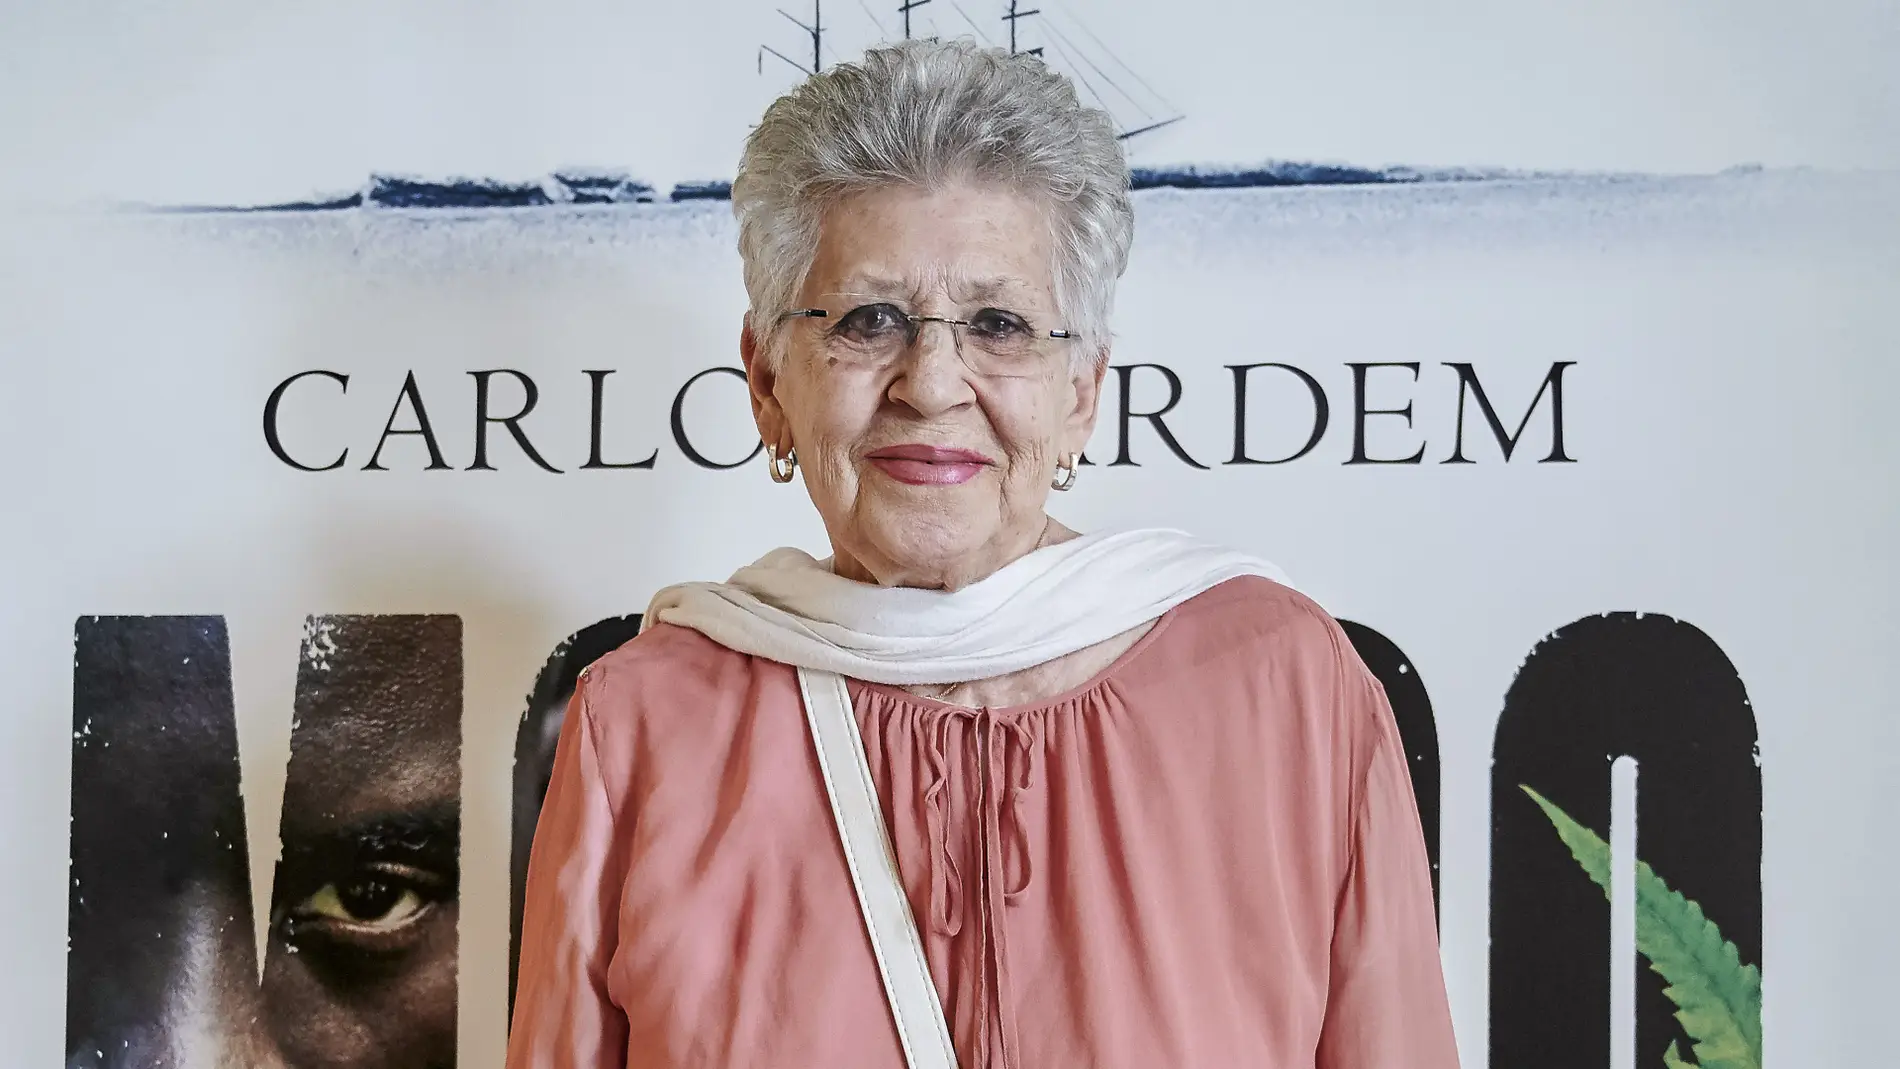 Fallece la actriz Pilar Bardem a los 82 años